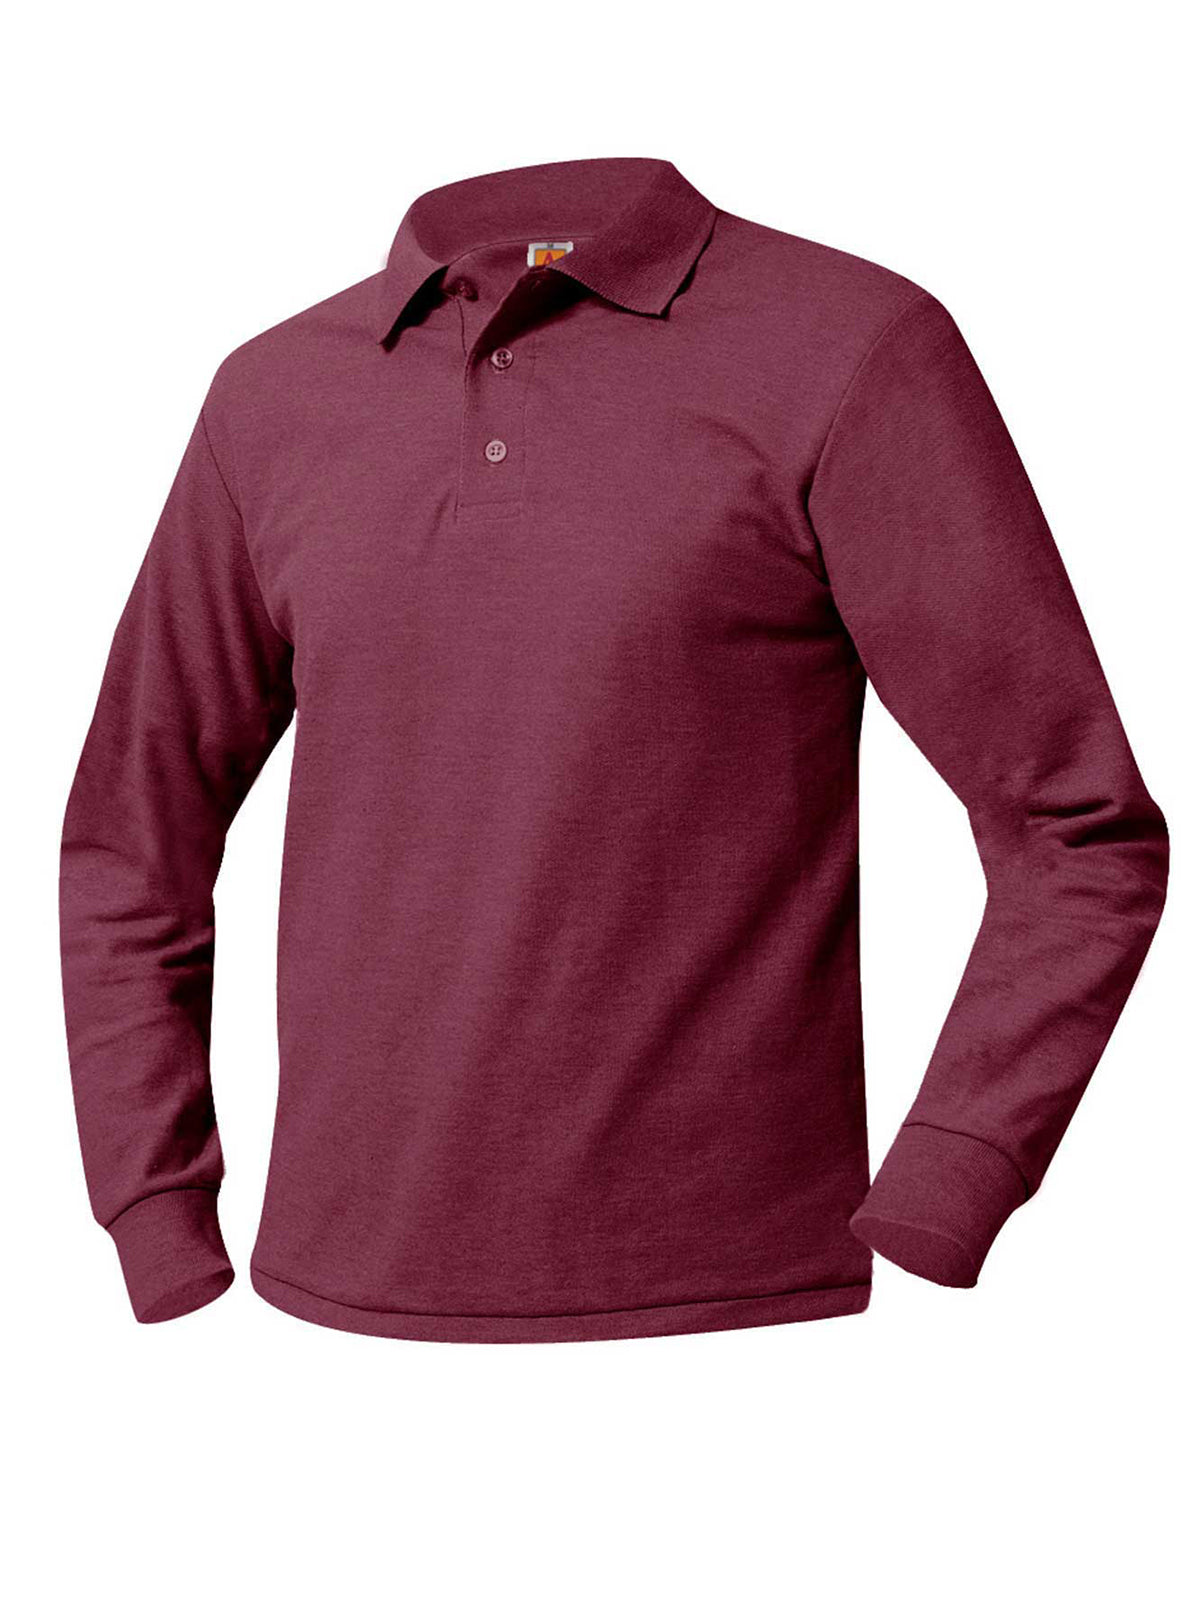 Unisex Long Sleeve Knit Shirt - 8766 - Wine